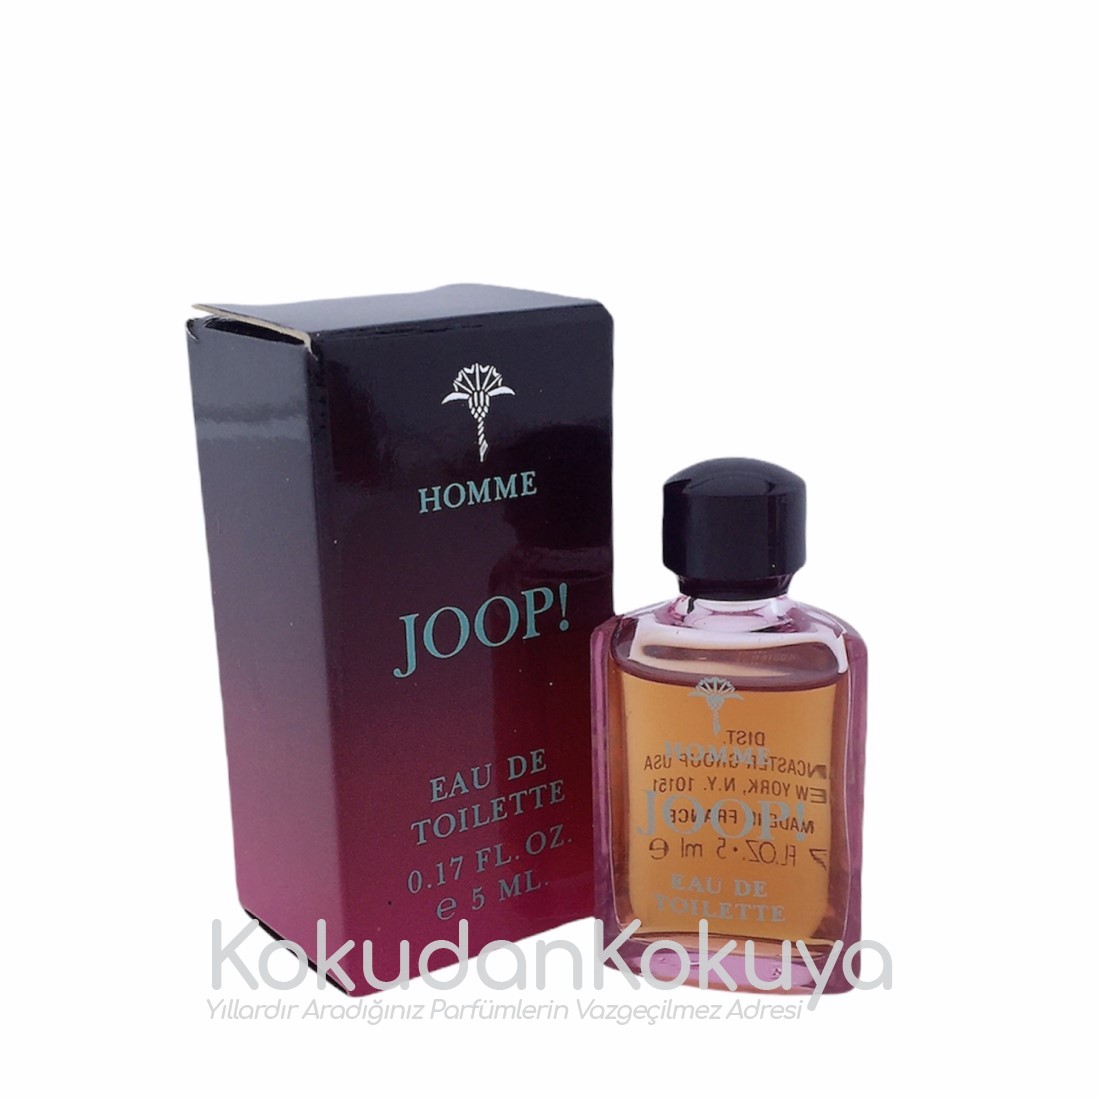 JOOP Homme (Vintage) Parfüm Erkek 5ml Minyatür (Mini Perfume) Dökme 